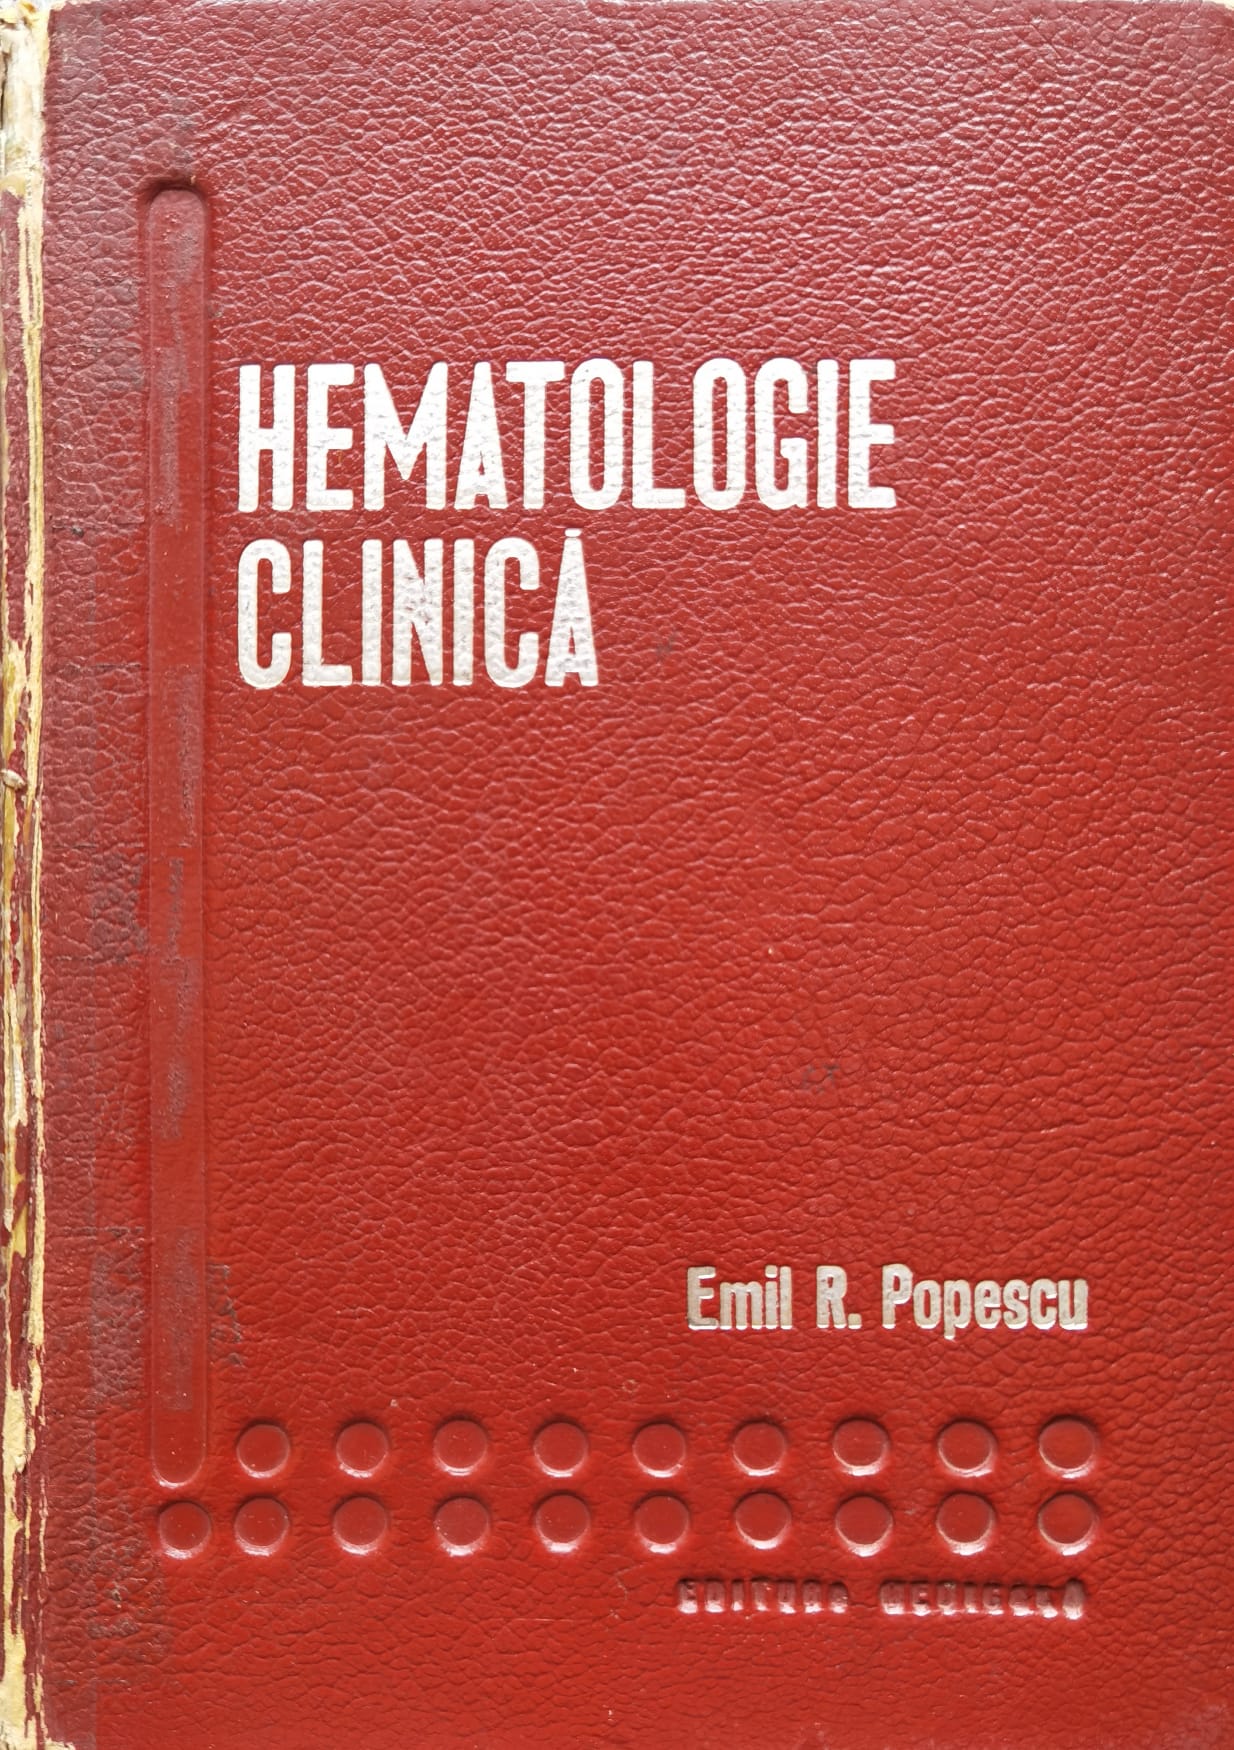 hematologie clinica                                                                                  emil r. popescu                                                                                     